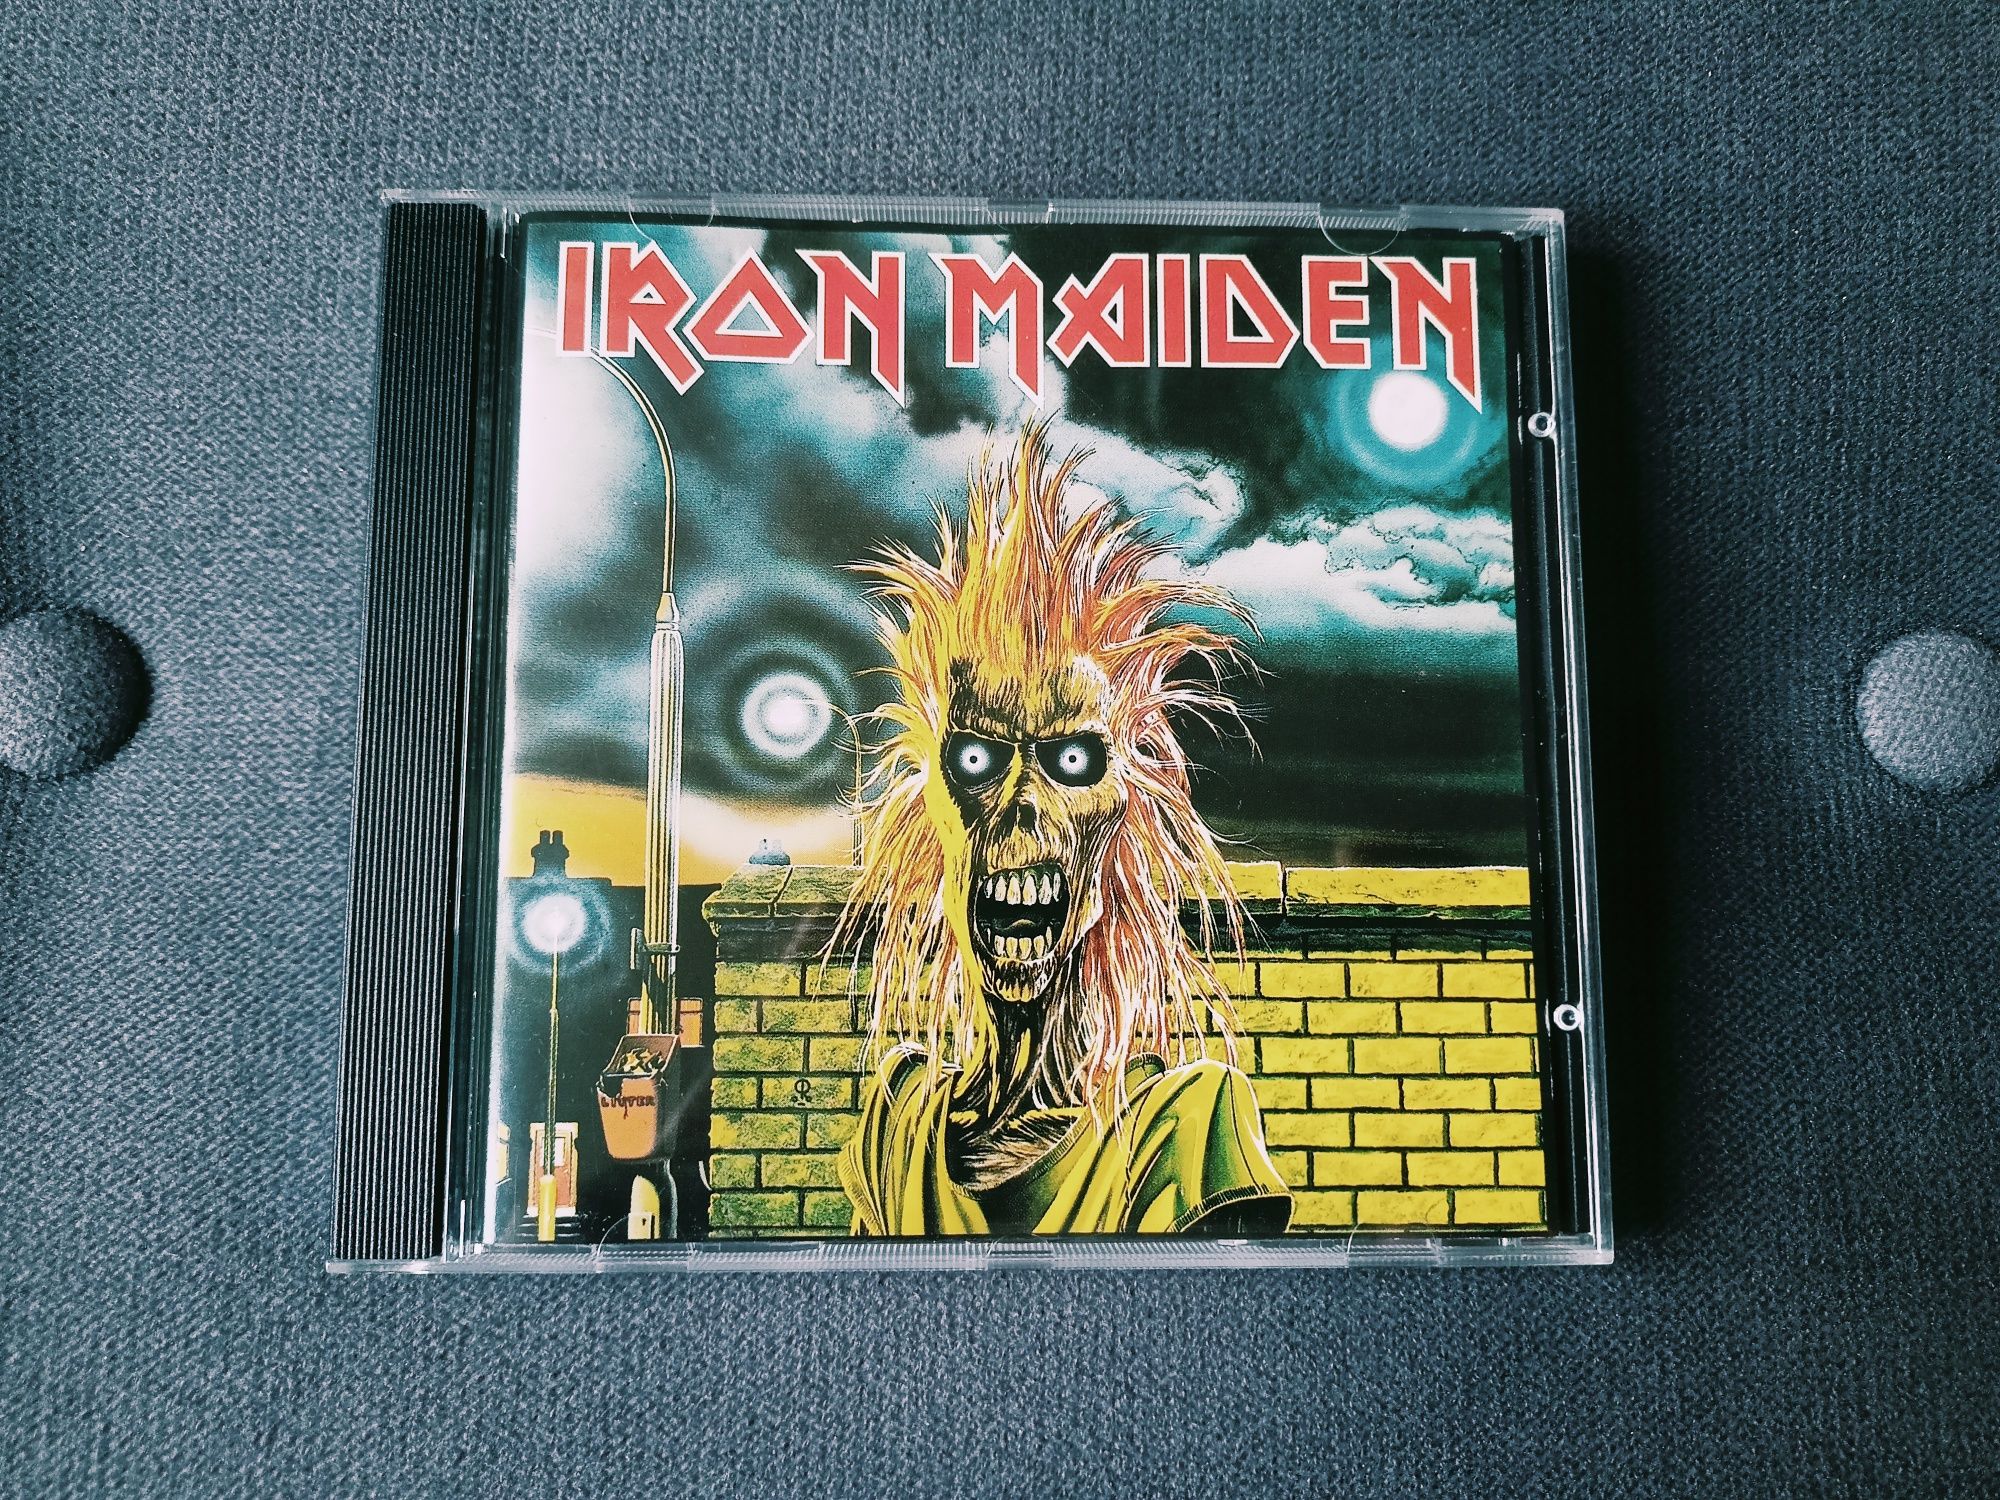 Iron Maiden - Iron Maiden/first press UK